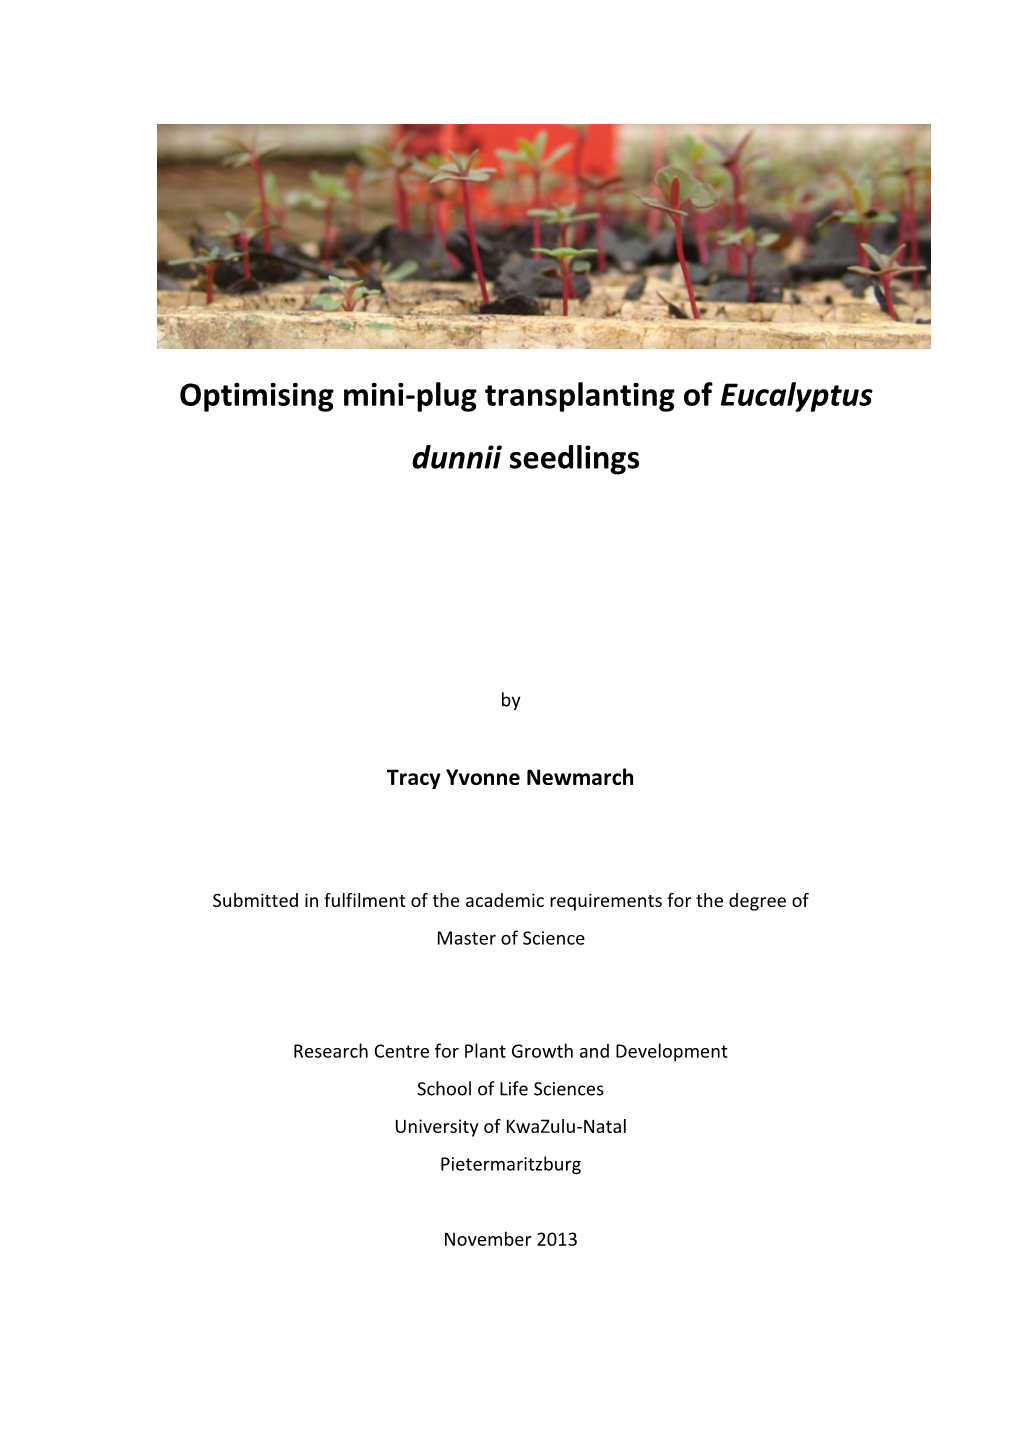 Optimising Mini-Plug Transplanting of Eucalyptus Dunnii Seedlings